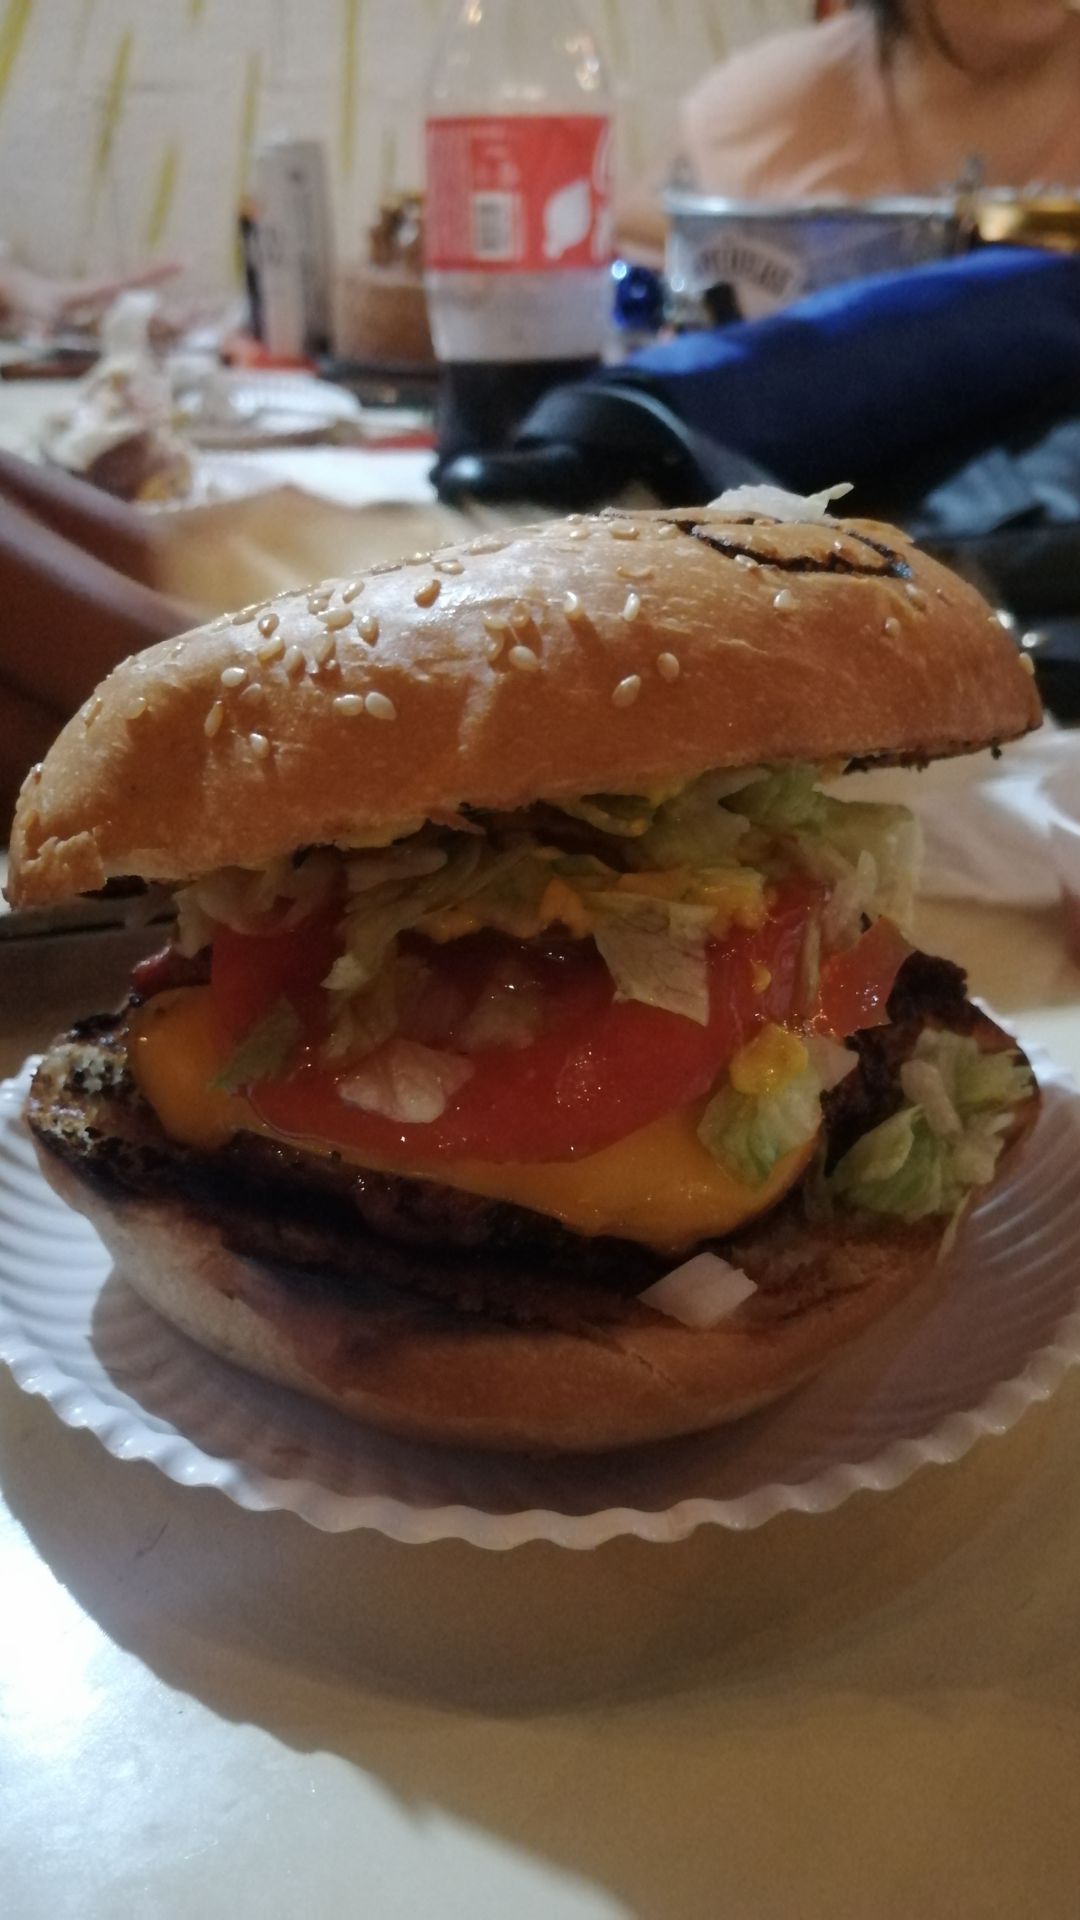 La hamburguesa, nacida en Estados Unidos, se ha convertido en una deliciosa obra maestra